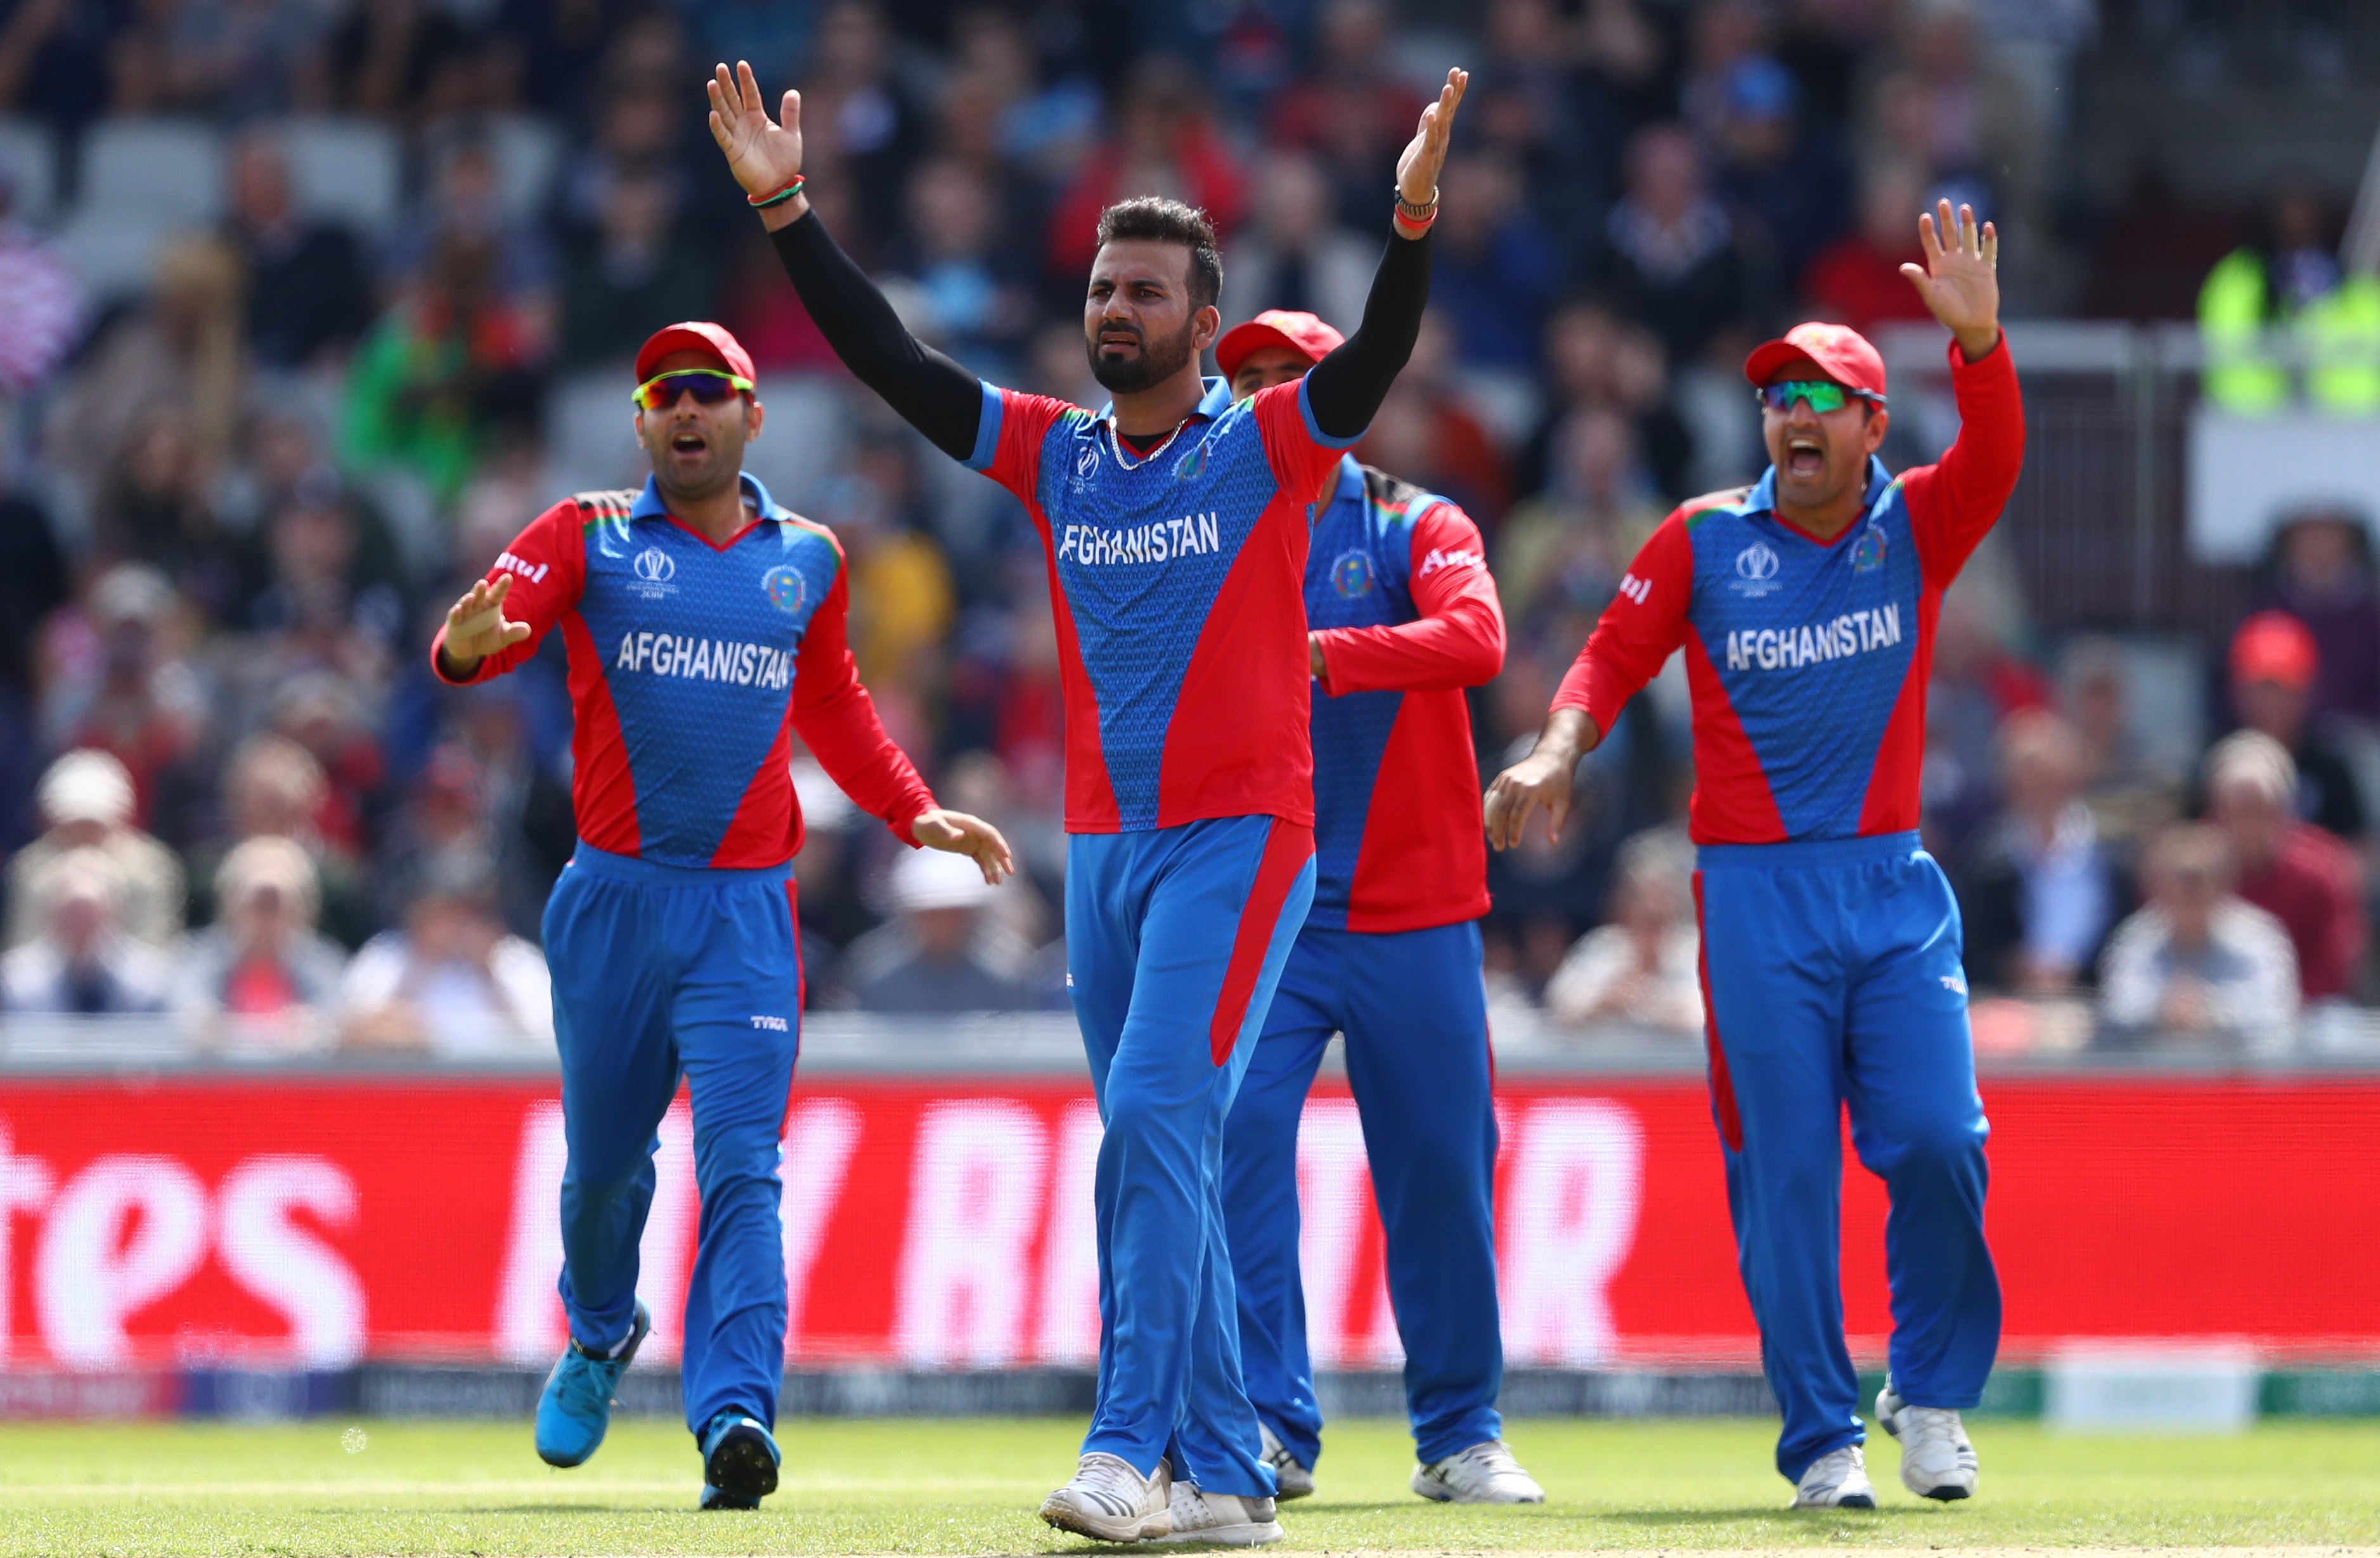 बांग्लादेश के खिलाफ टेस्ट और त्रिकोणीय सीरीज के लिए अफगानिस्तान टीम घोषित 9